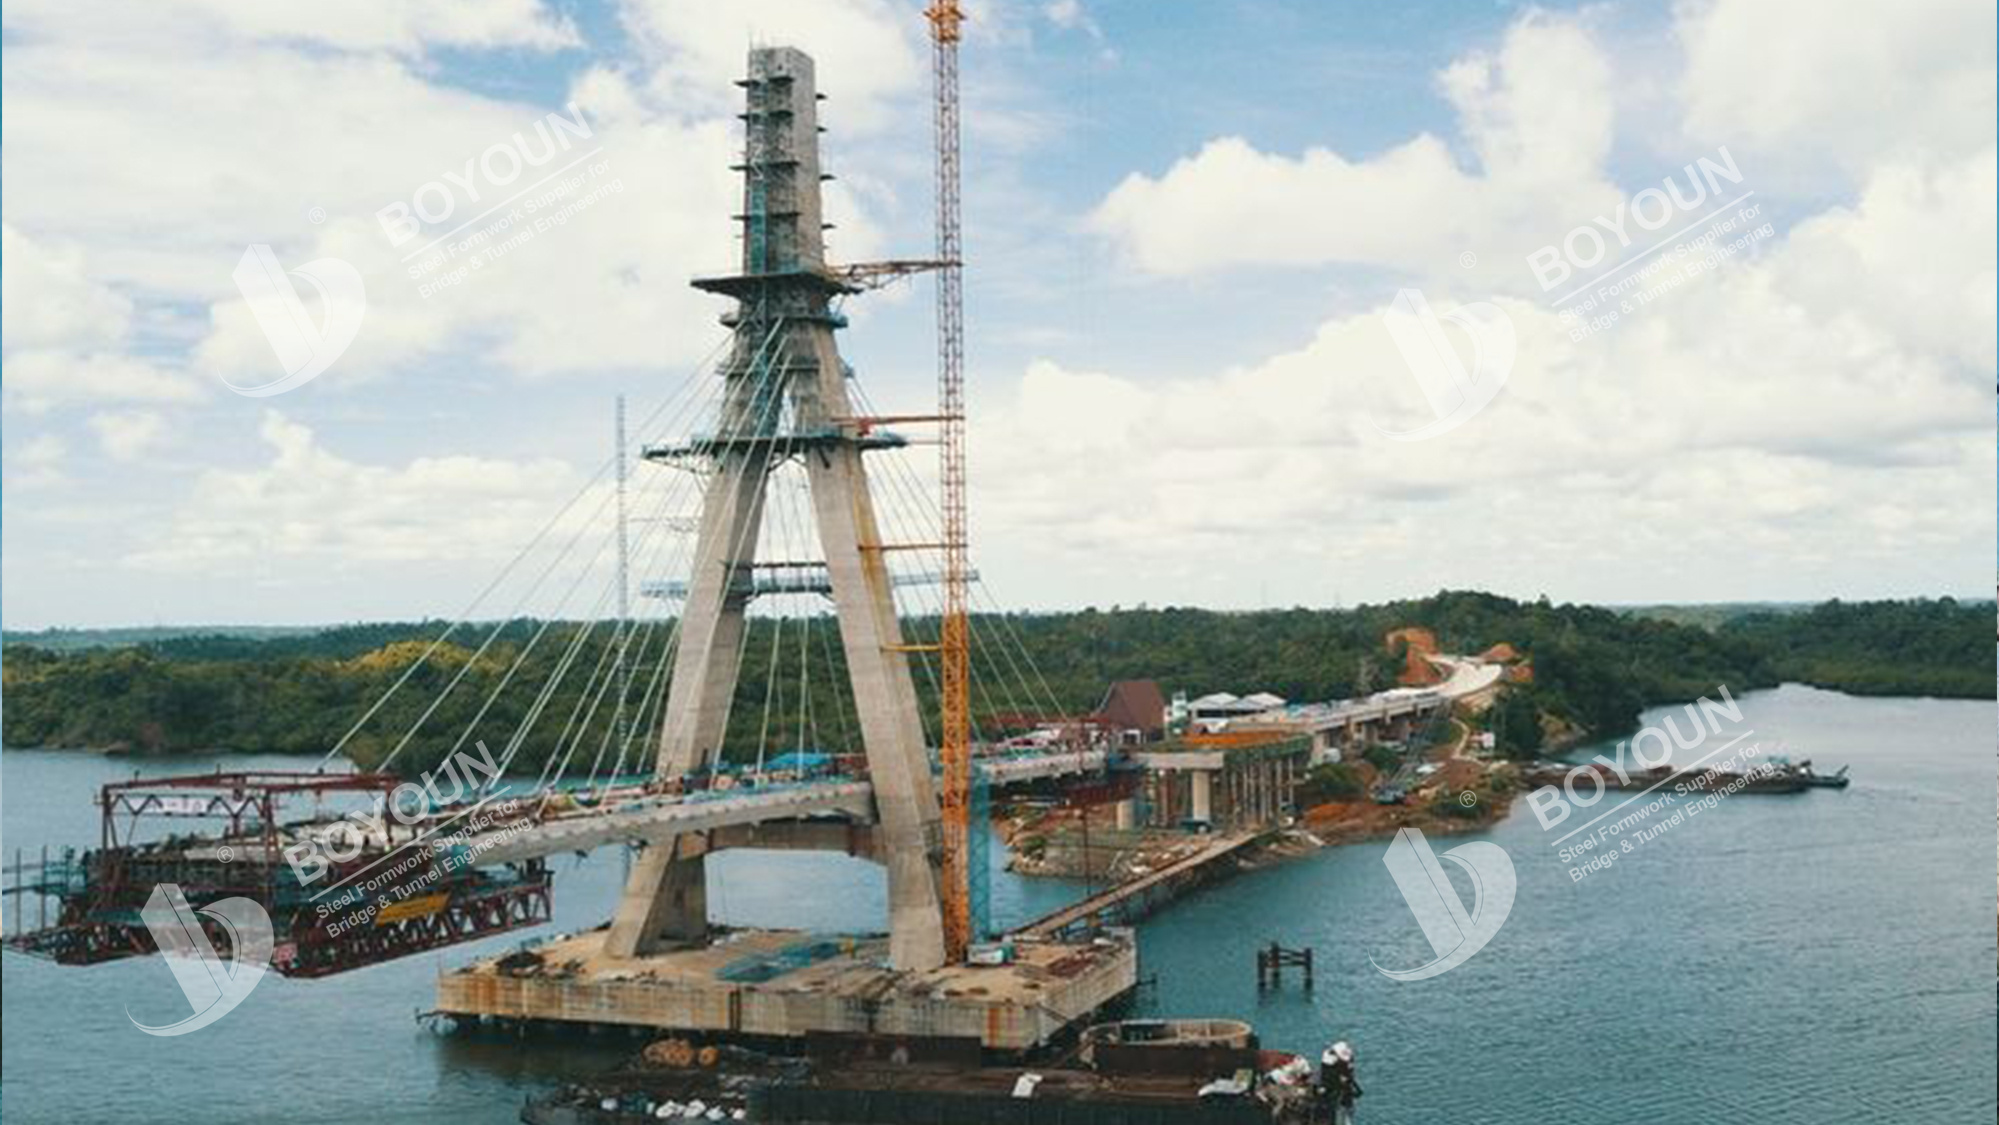 Indonesia Pulau Balang Bridge Project (en inglés)